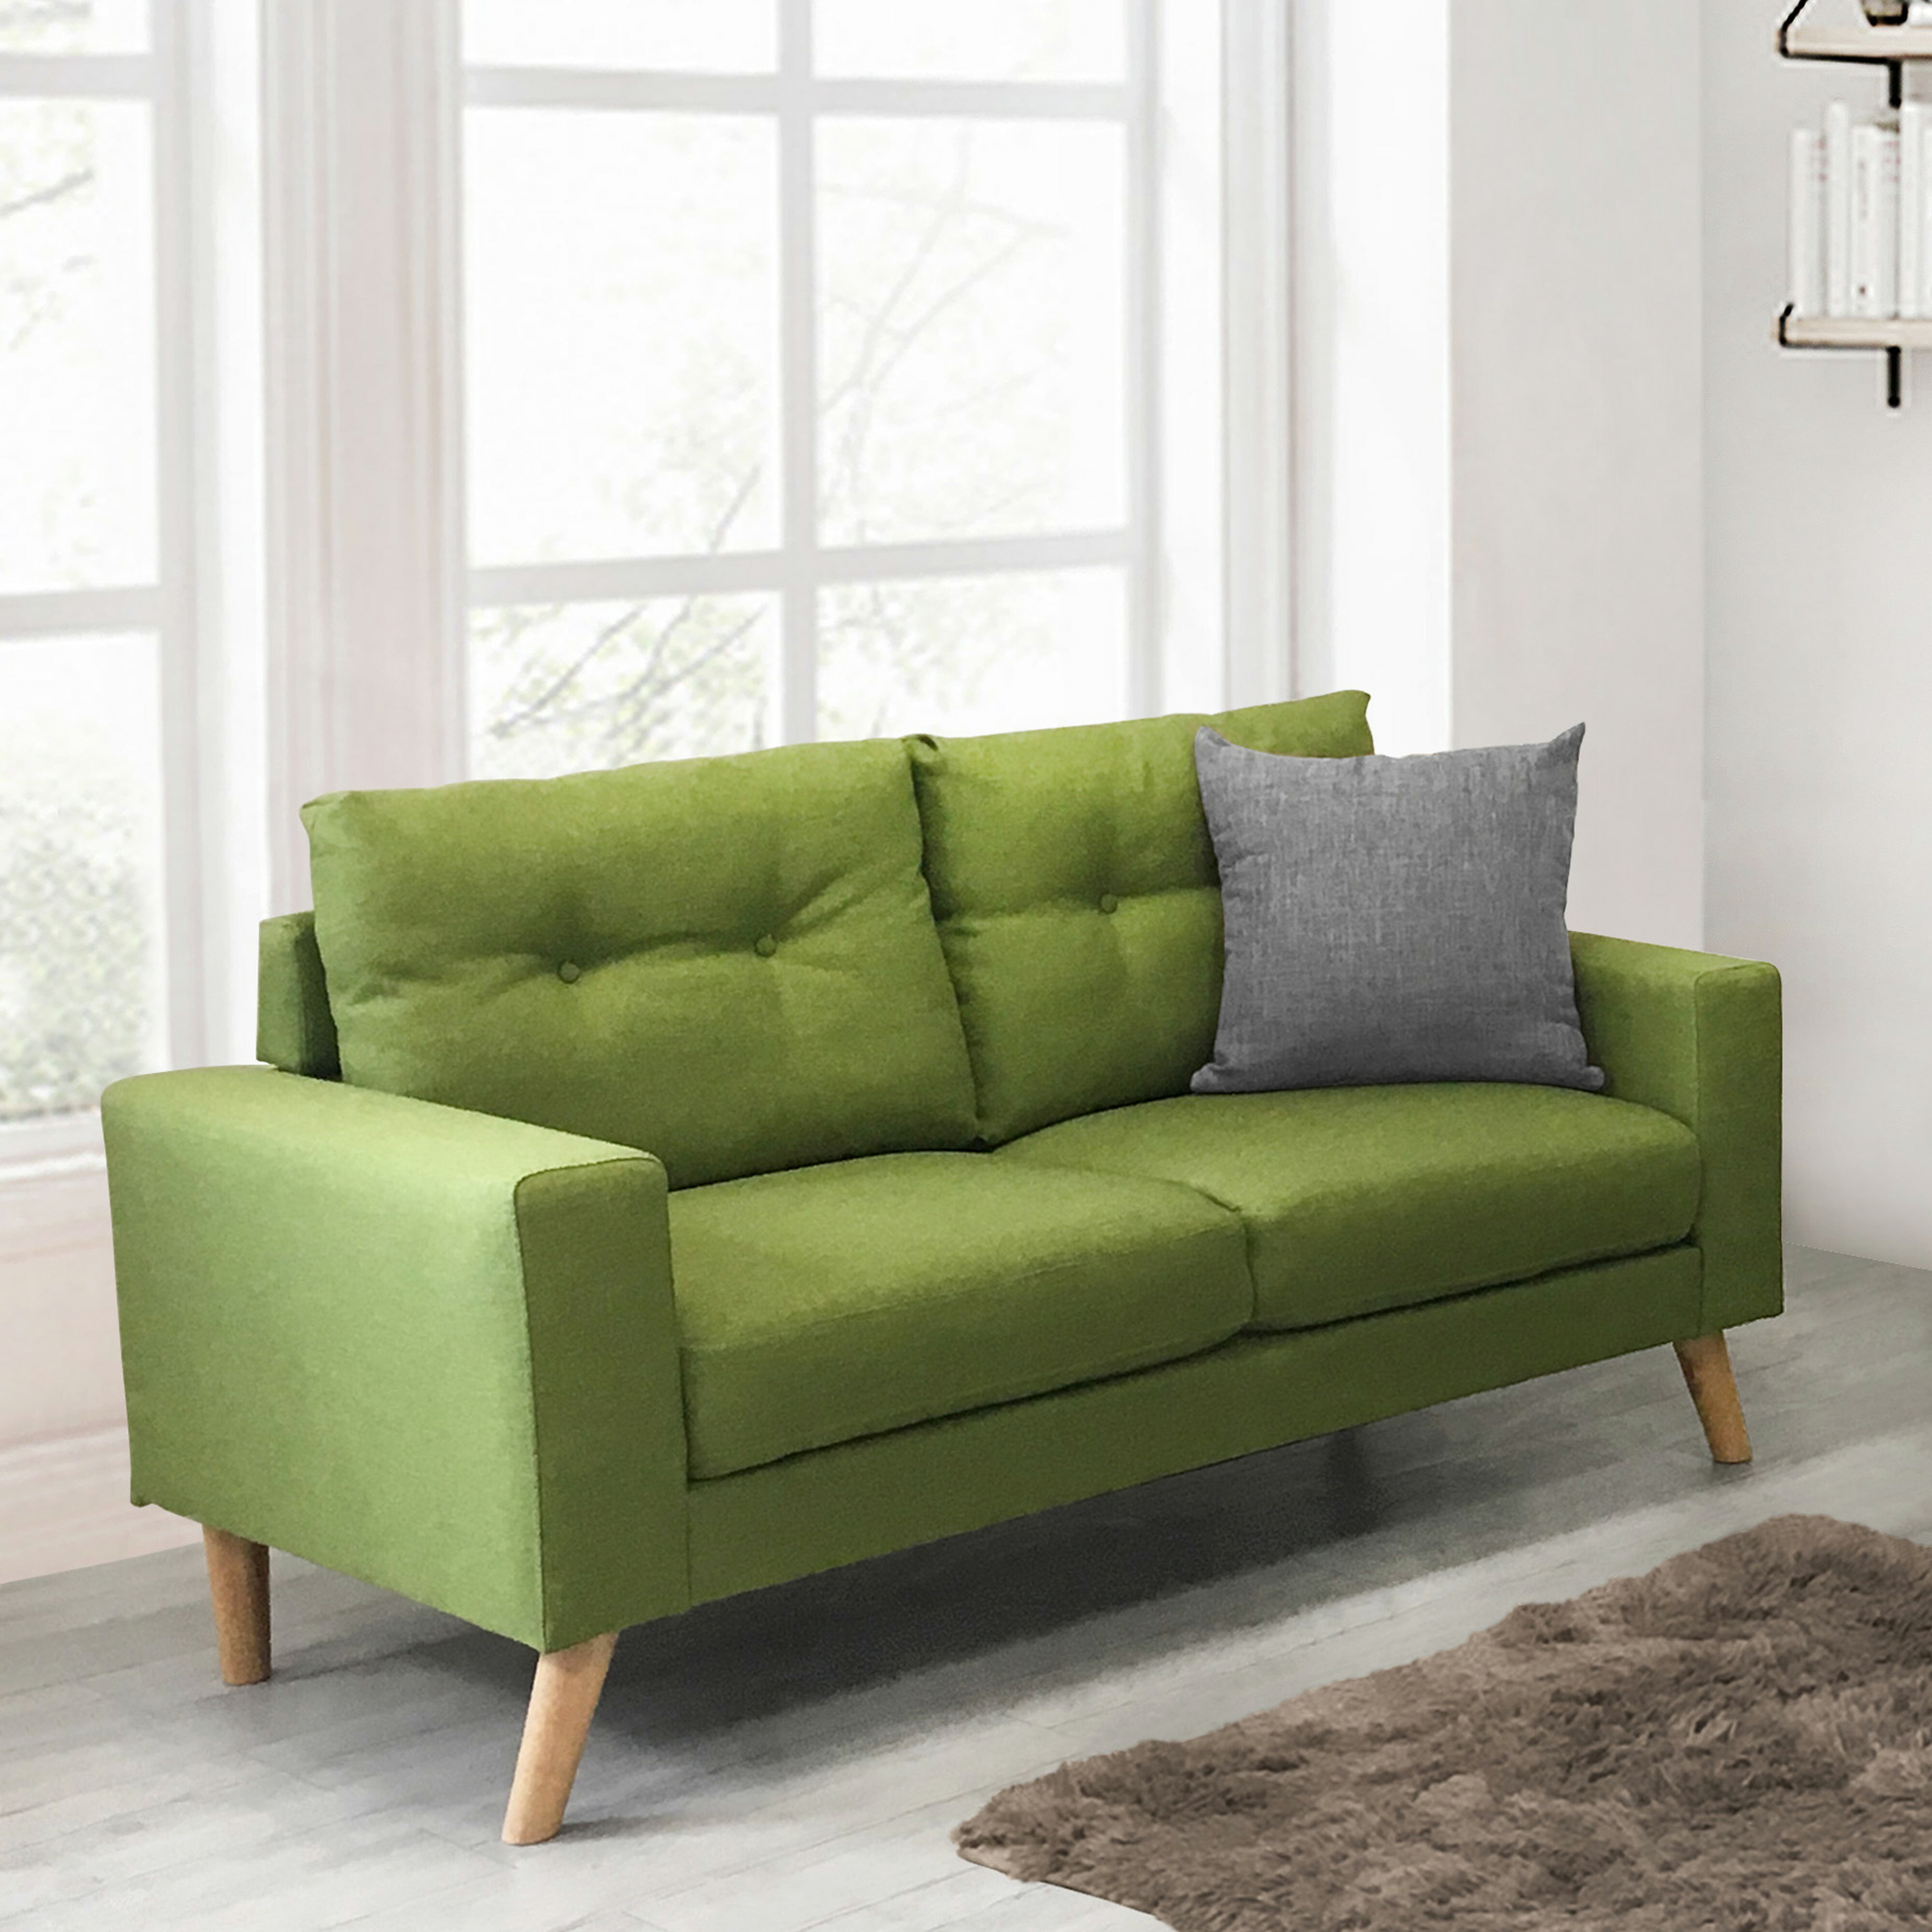 《翡翠》 新品 綠色 雙人沙發 二人座 二人位 布沙發 亞麻布 日式 清新 自然 套房 客廳 工廠直營 【新生活家具】